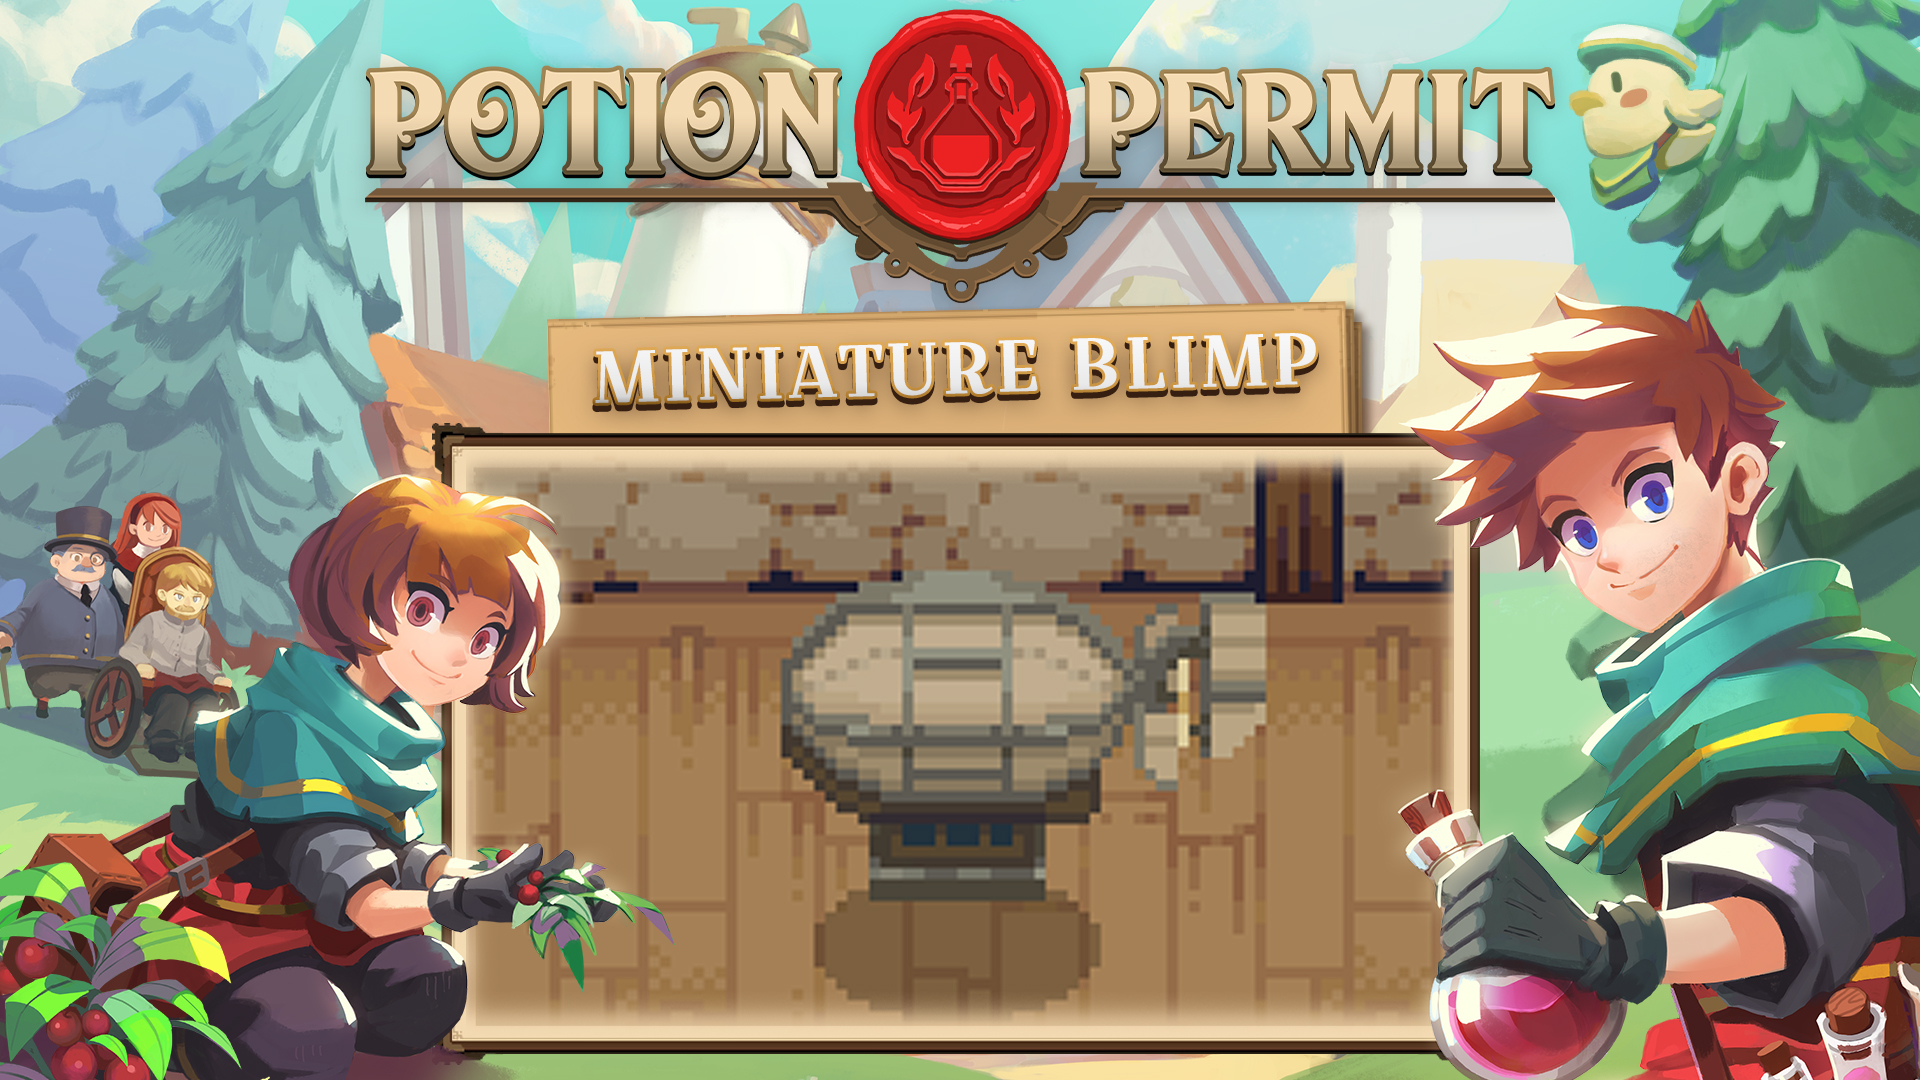 Potion Permit - Miniature Blimp